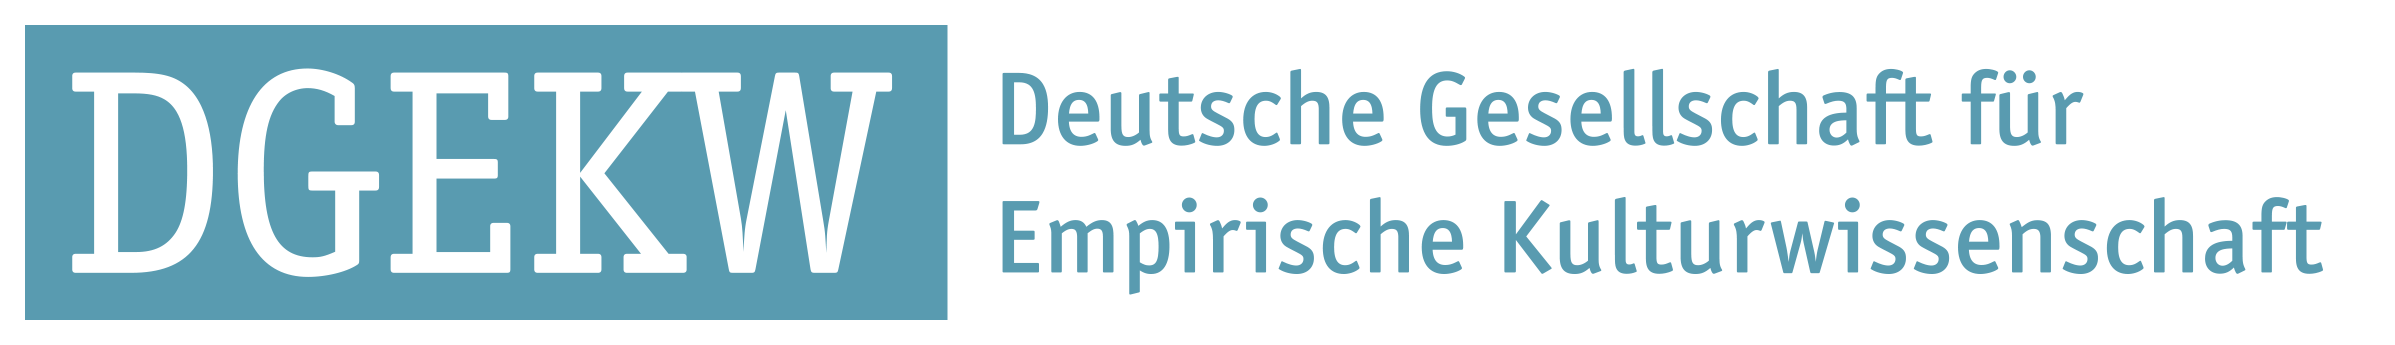 Deutsche Gellschaft für Empirische Kulturwissenschaft